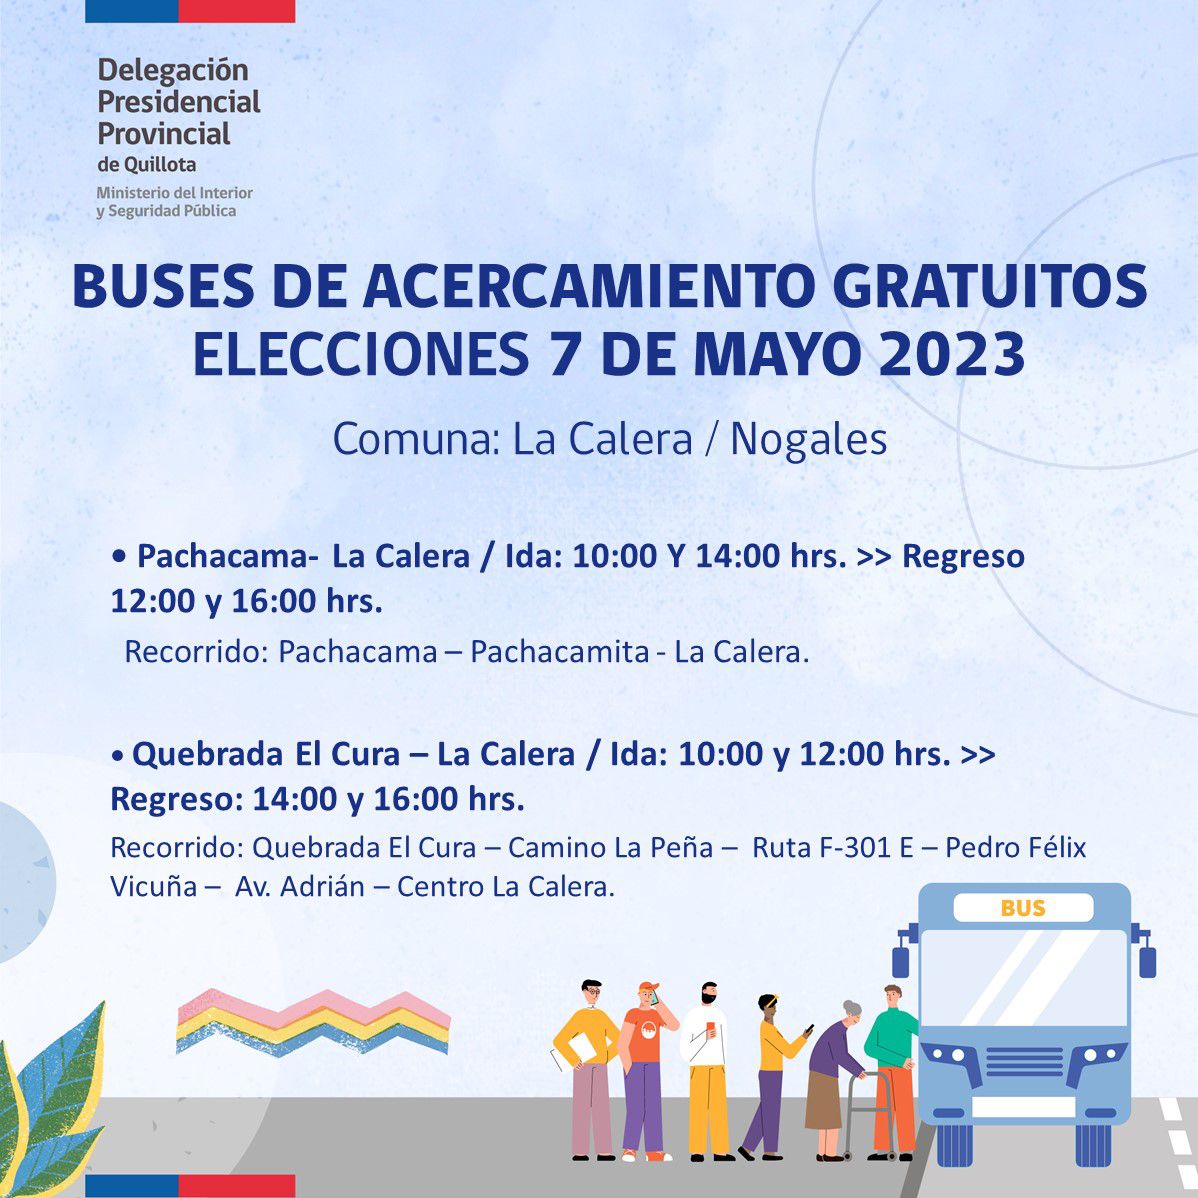 Los recorridos gratuitos de buses para las elecciones de 7 mayo en La Calera y Nogales